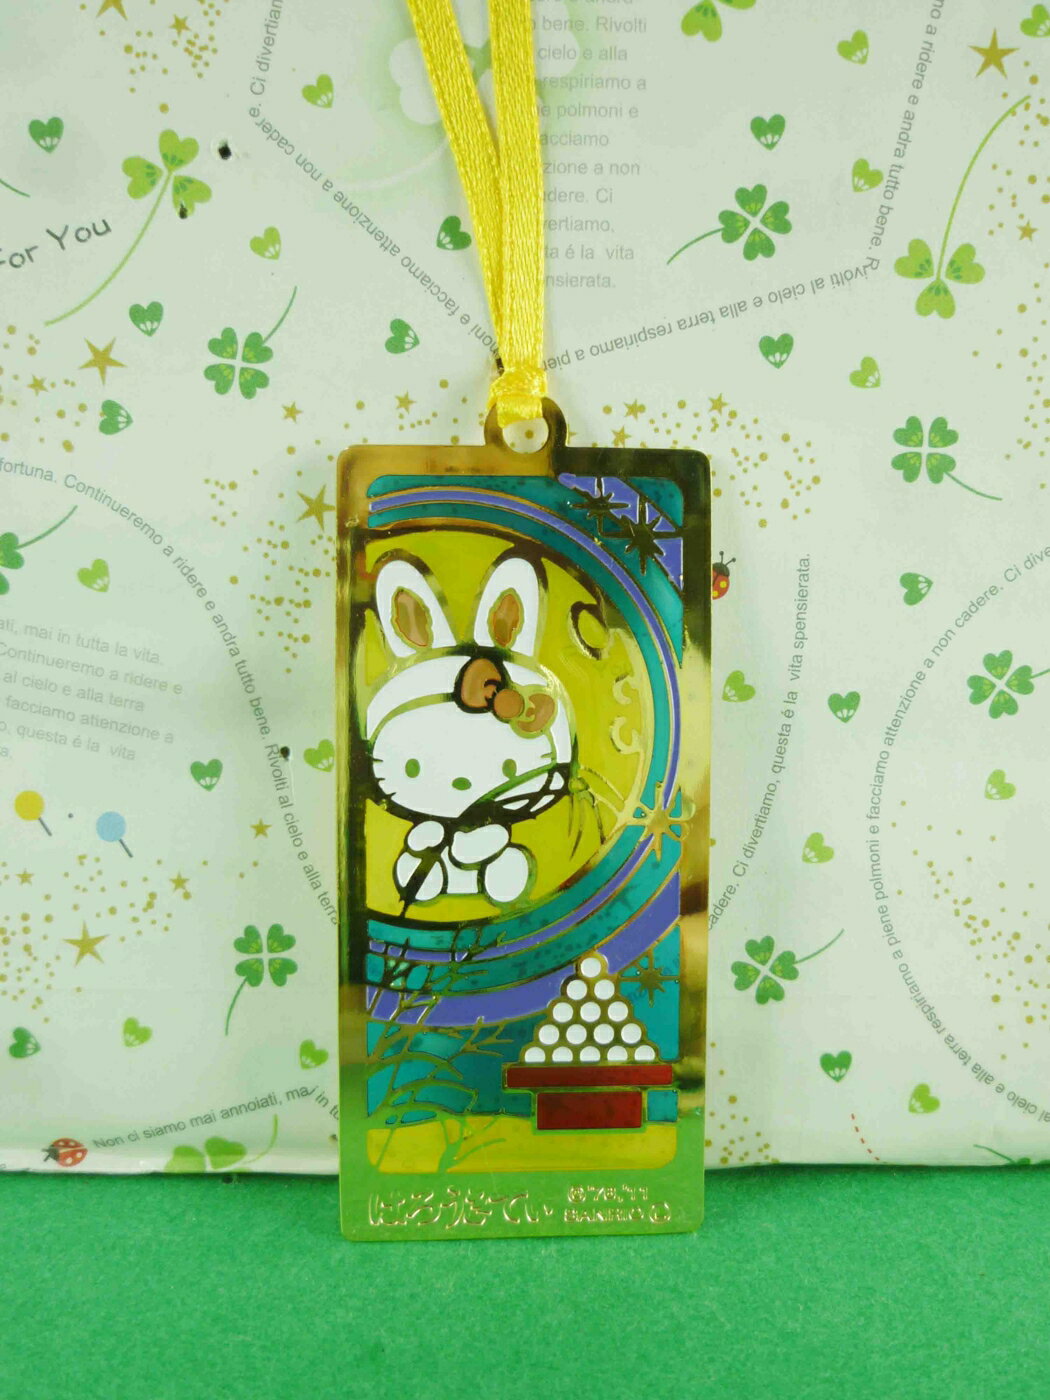 【震撼精品百貨】Hello Kitty 凱蒂貓 書籤-方形造型-兔子圖案 震撼日式精品百貨